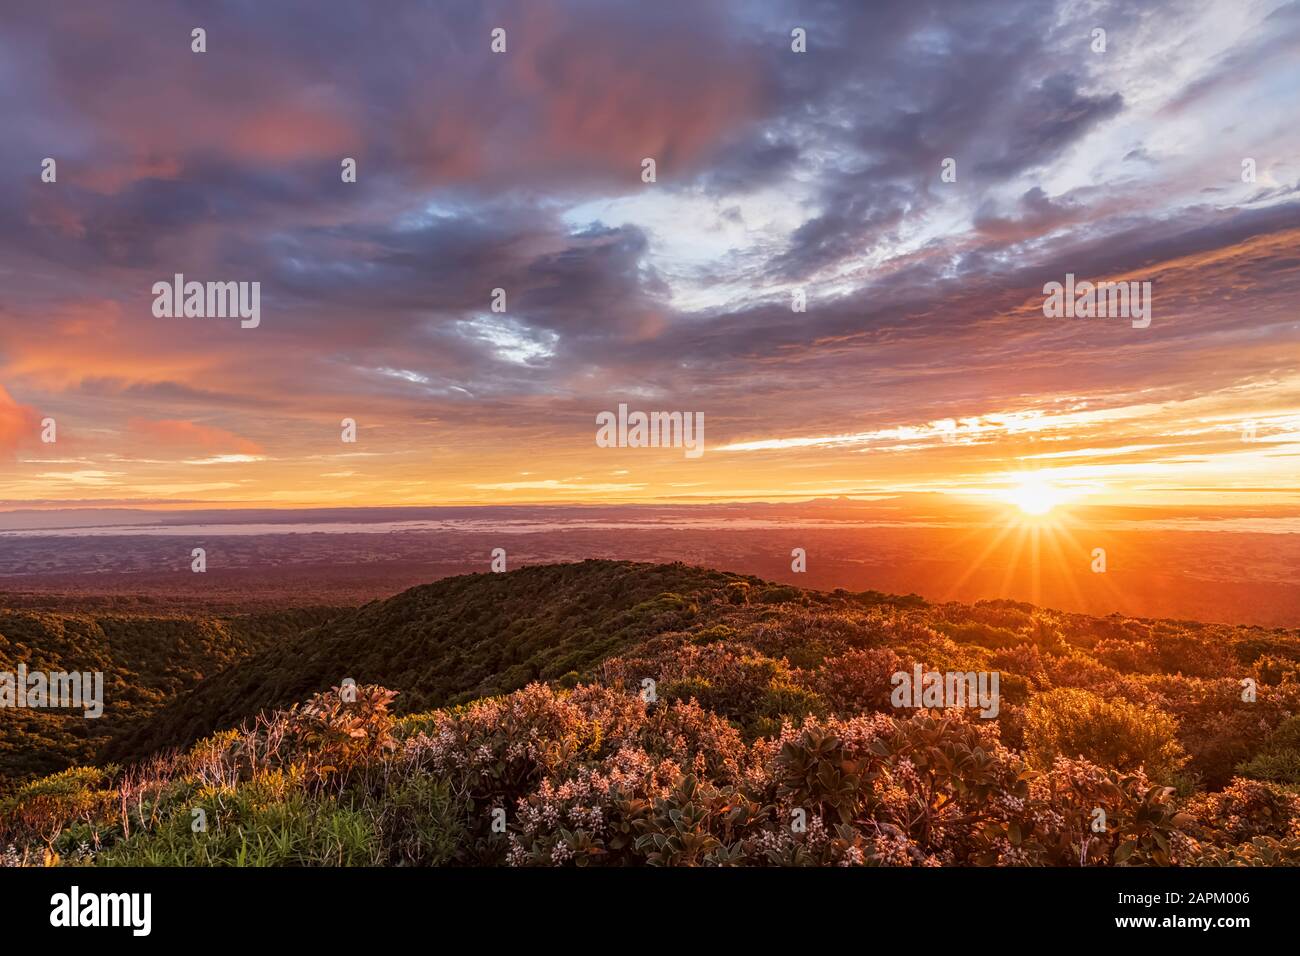 New Zealand, Dramatic sunrise over Tongariro National Park Stock Photo